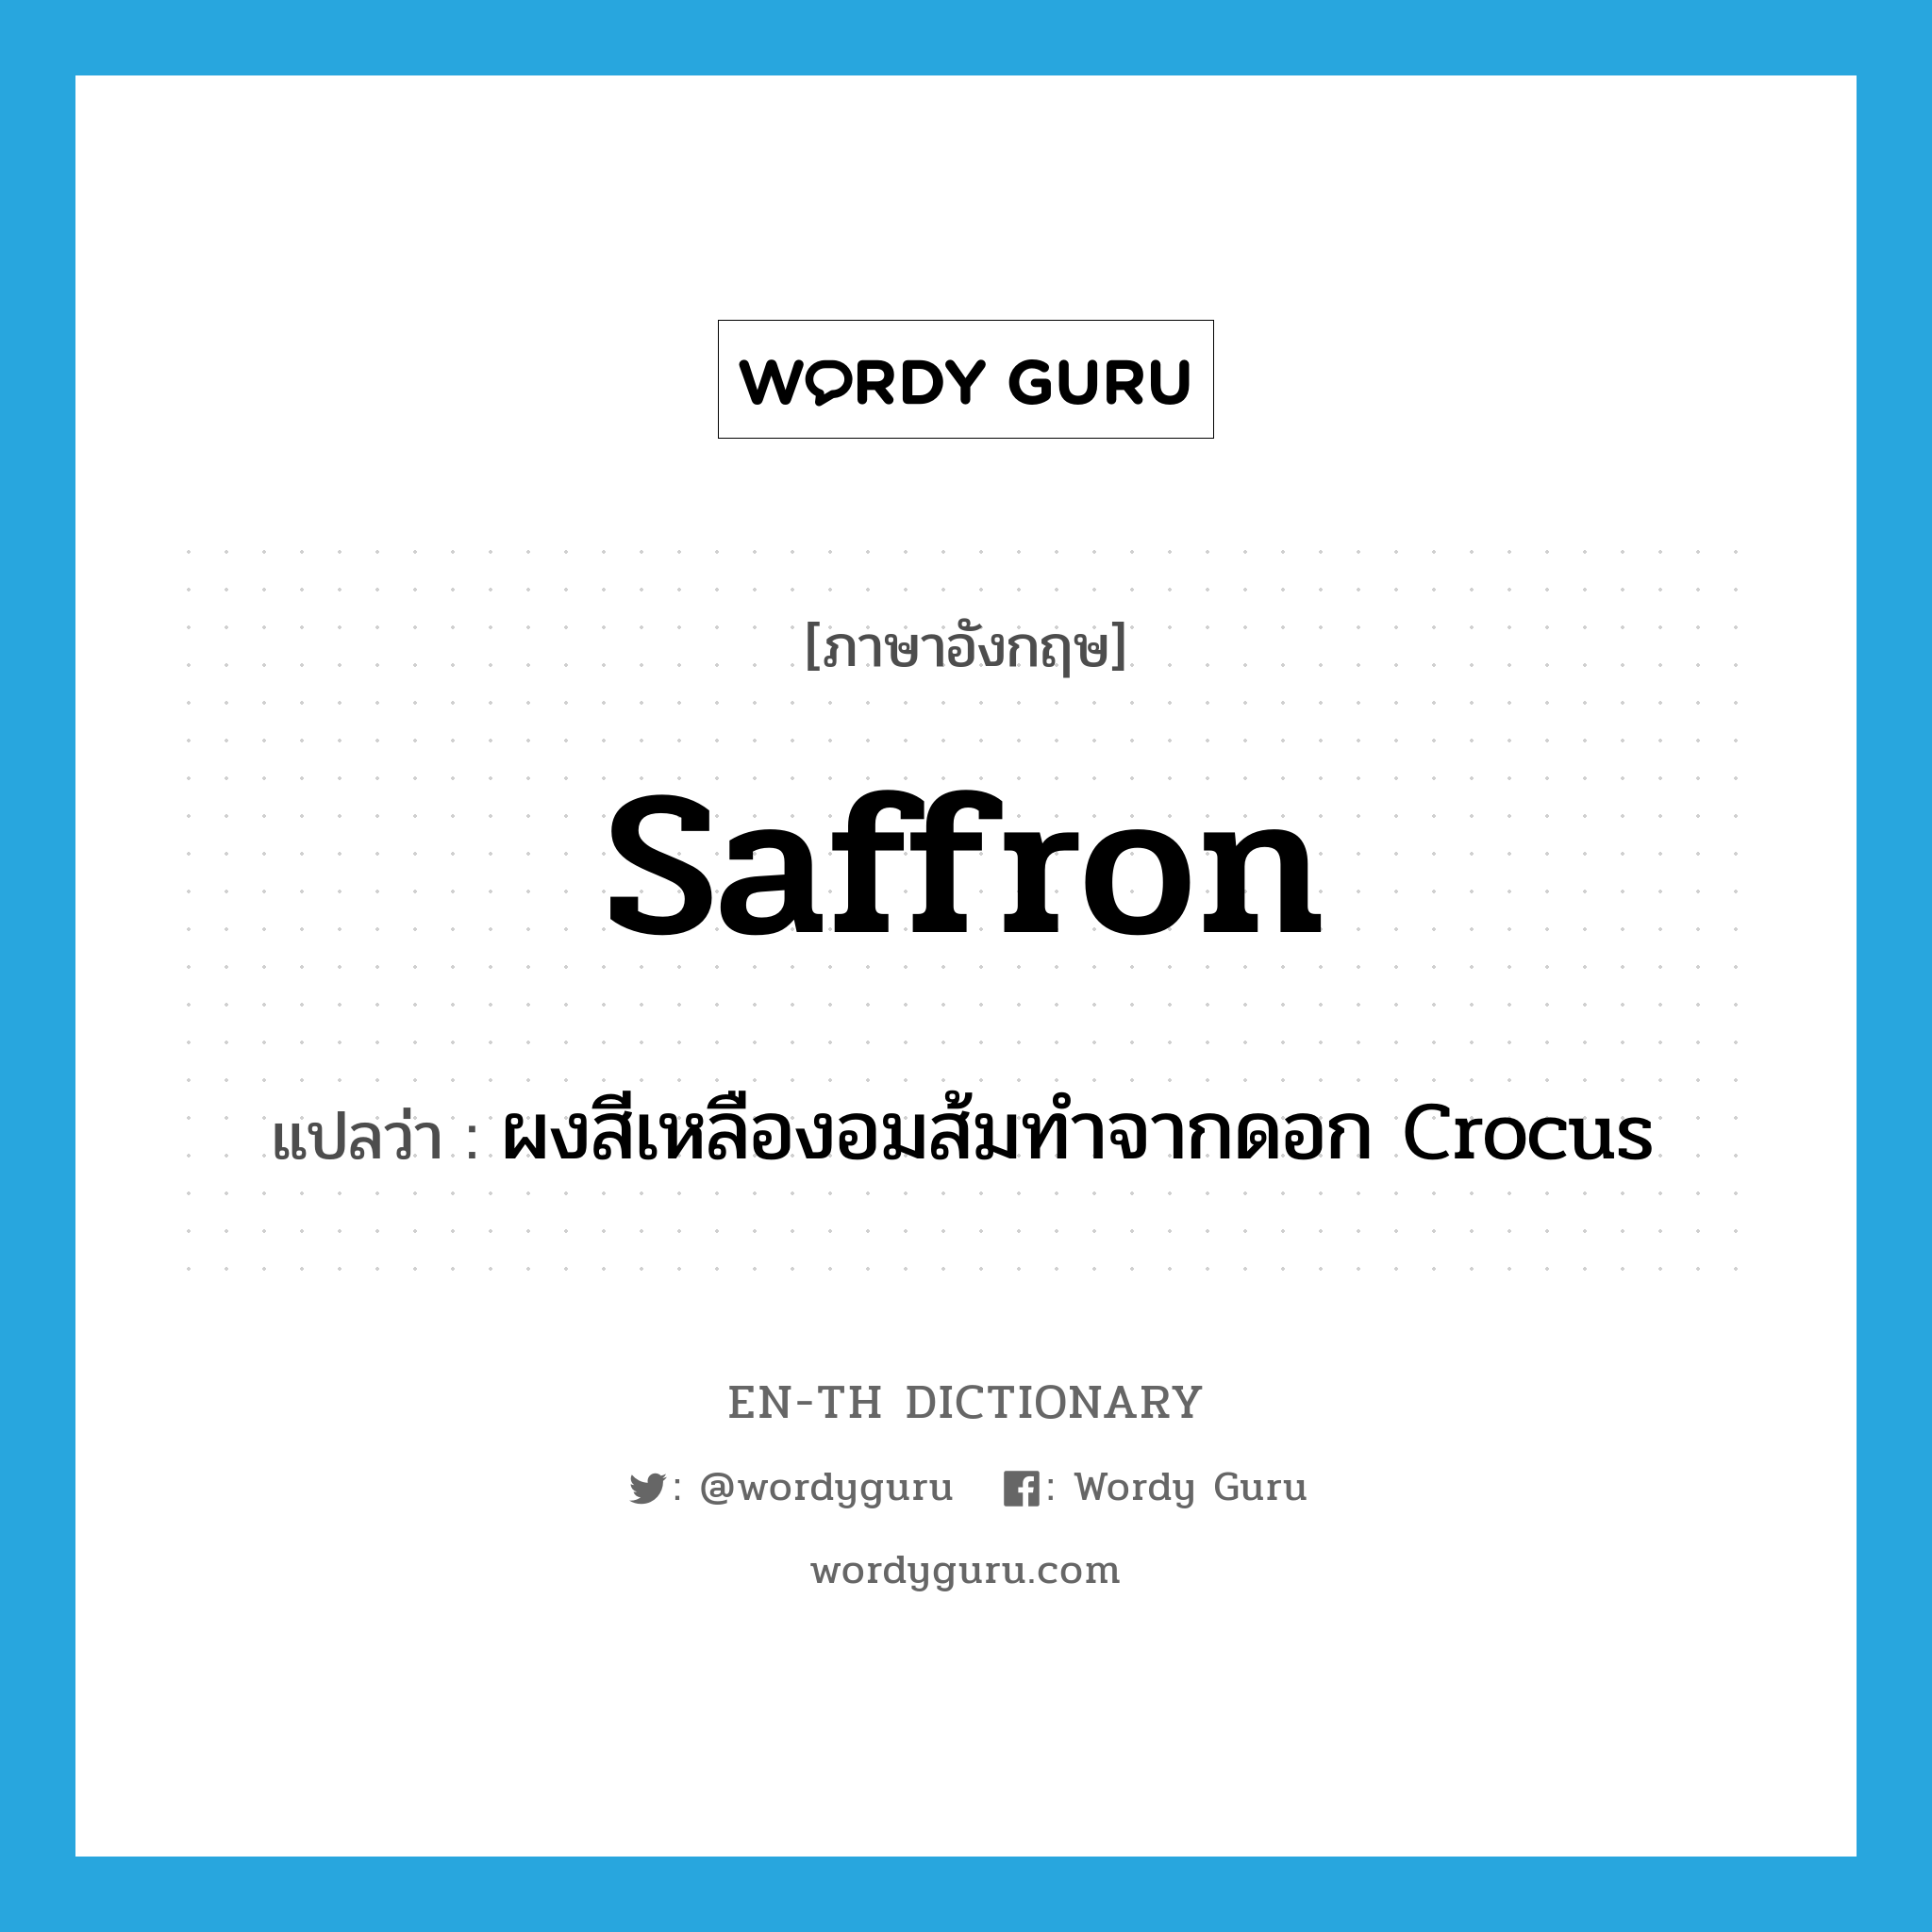 saffron แปลว่า?, คำศัพท์ภาษาอังกฤษ saffron แปลว่า ผงสีเหลืองอมส้มทำจากดอก Crocus ประเภท N หมวด N